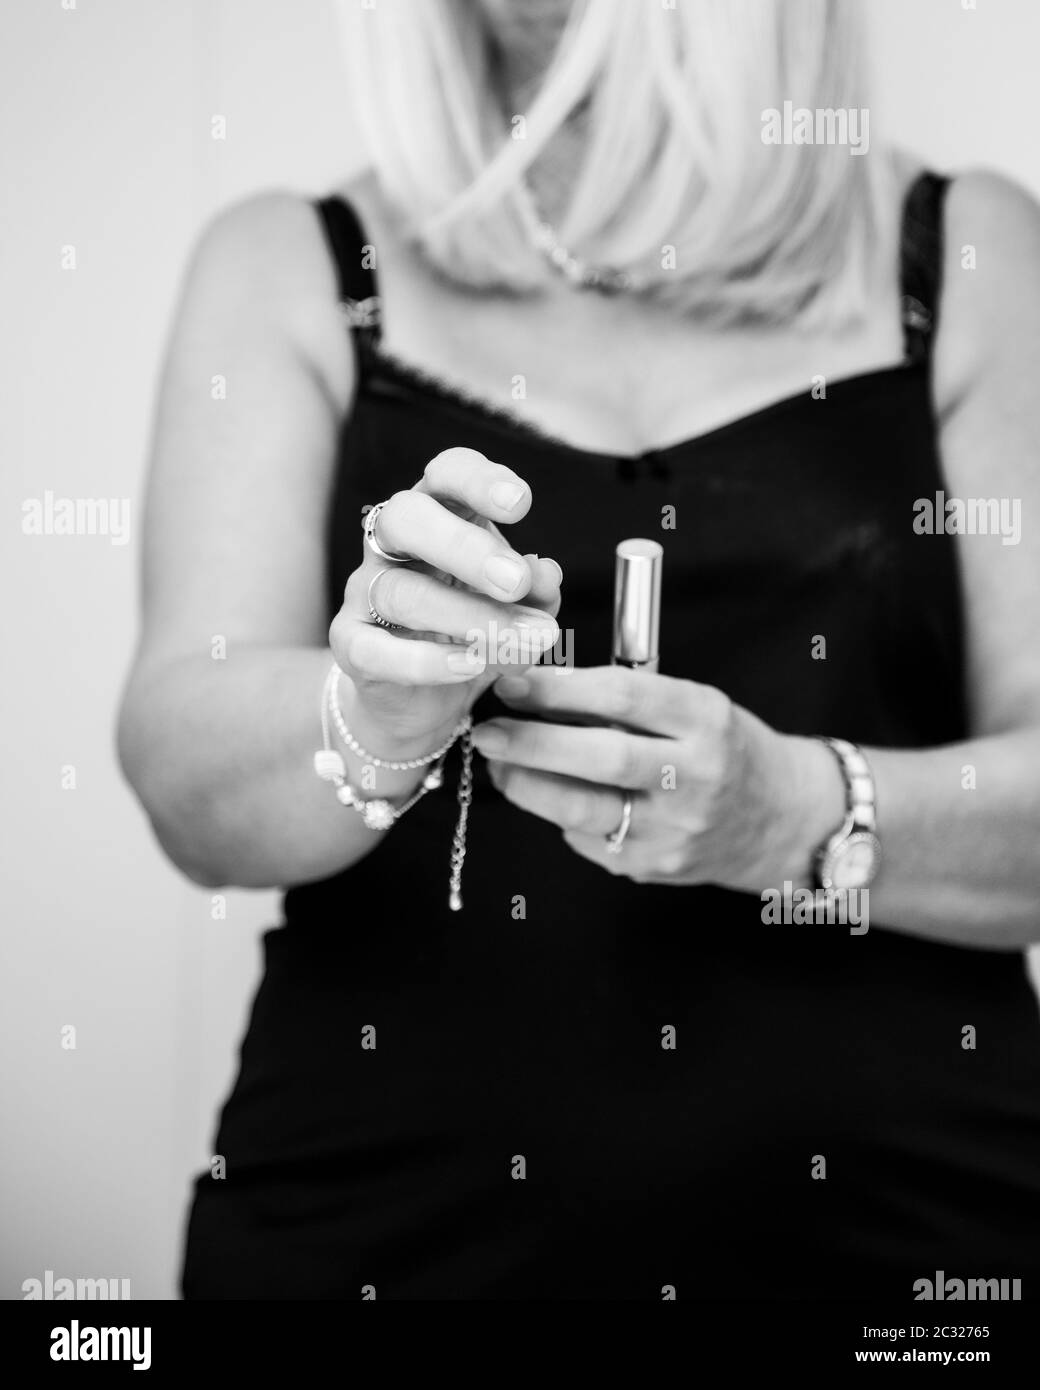 Un'immagine monocromatica di stile di vita di una donna bionda che mette su un bracciale sempre pronto ad uscire per la sera. L'immagine si concentra sulle mani. Foto Stock